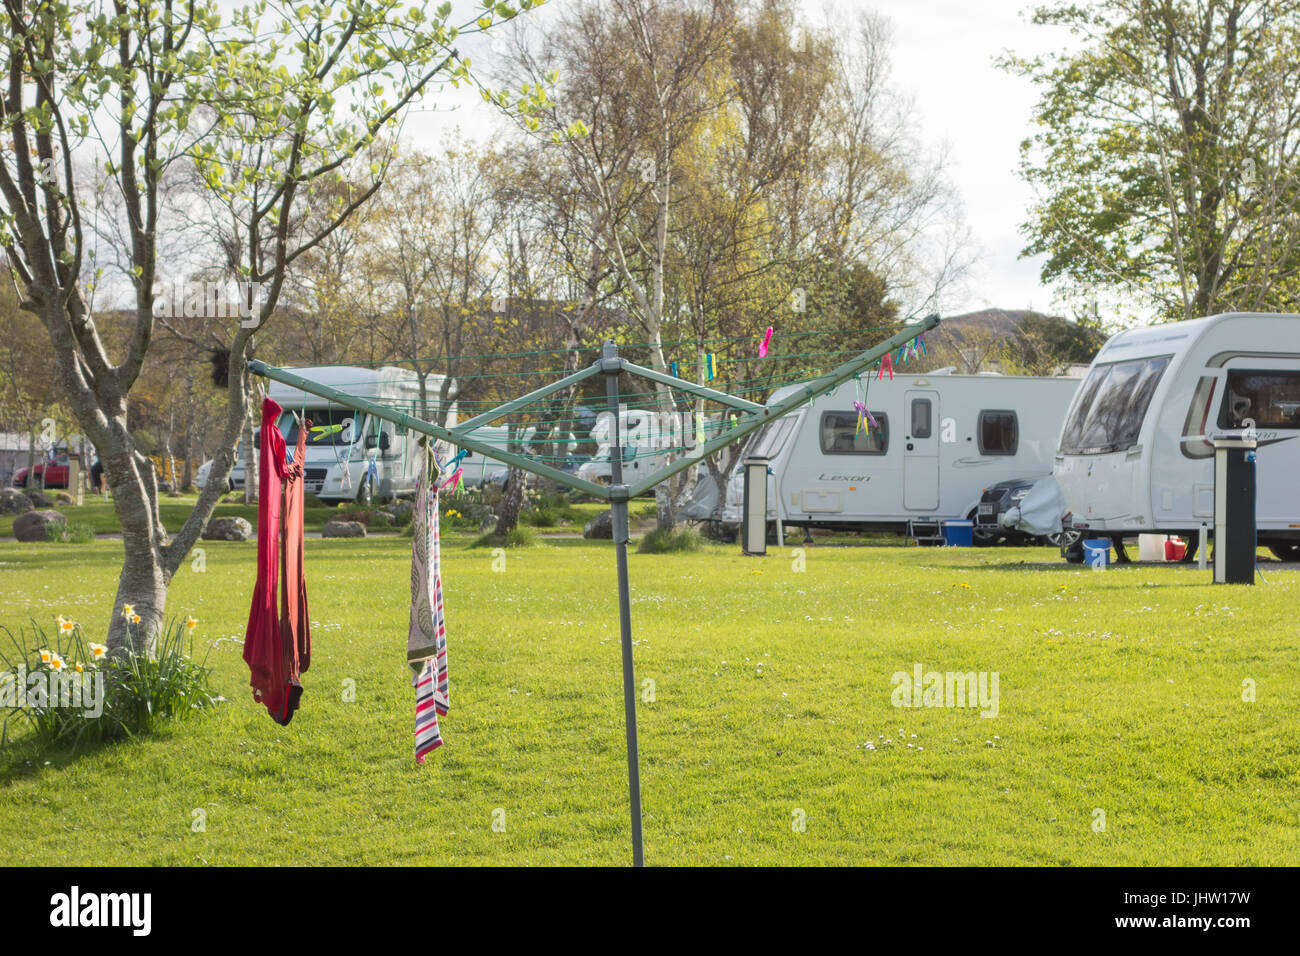 Camping Urlaub - Poolewe Camping - Wohnwagen und Waschen Linie, Schottland, UK Stockfoto